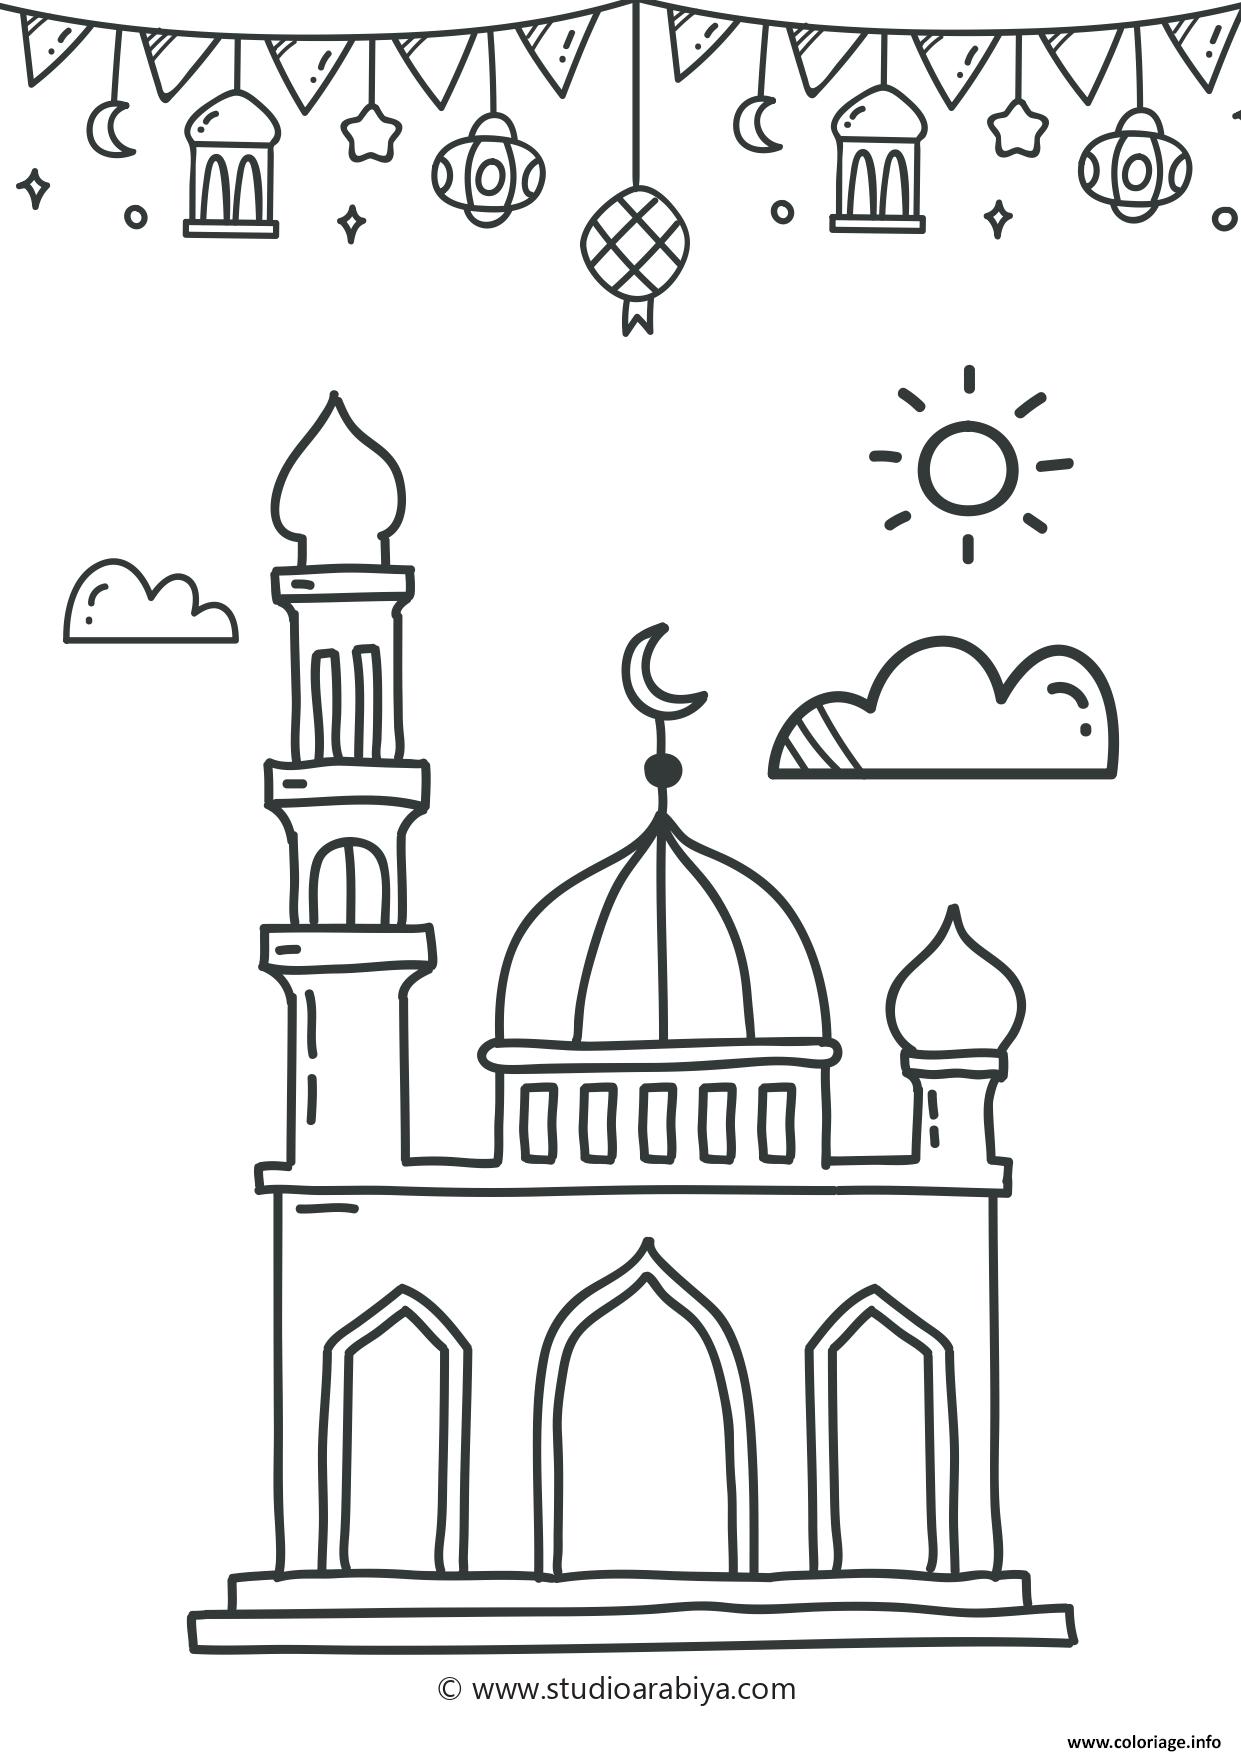 Dessin ramadan mosque Coloriage Gratuit à Imprimer